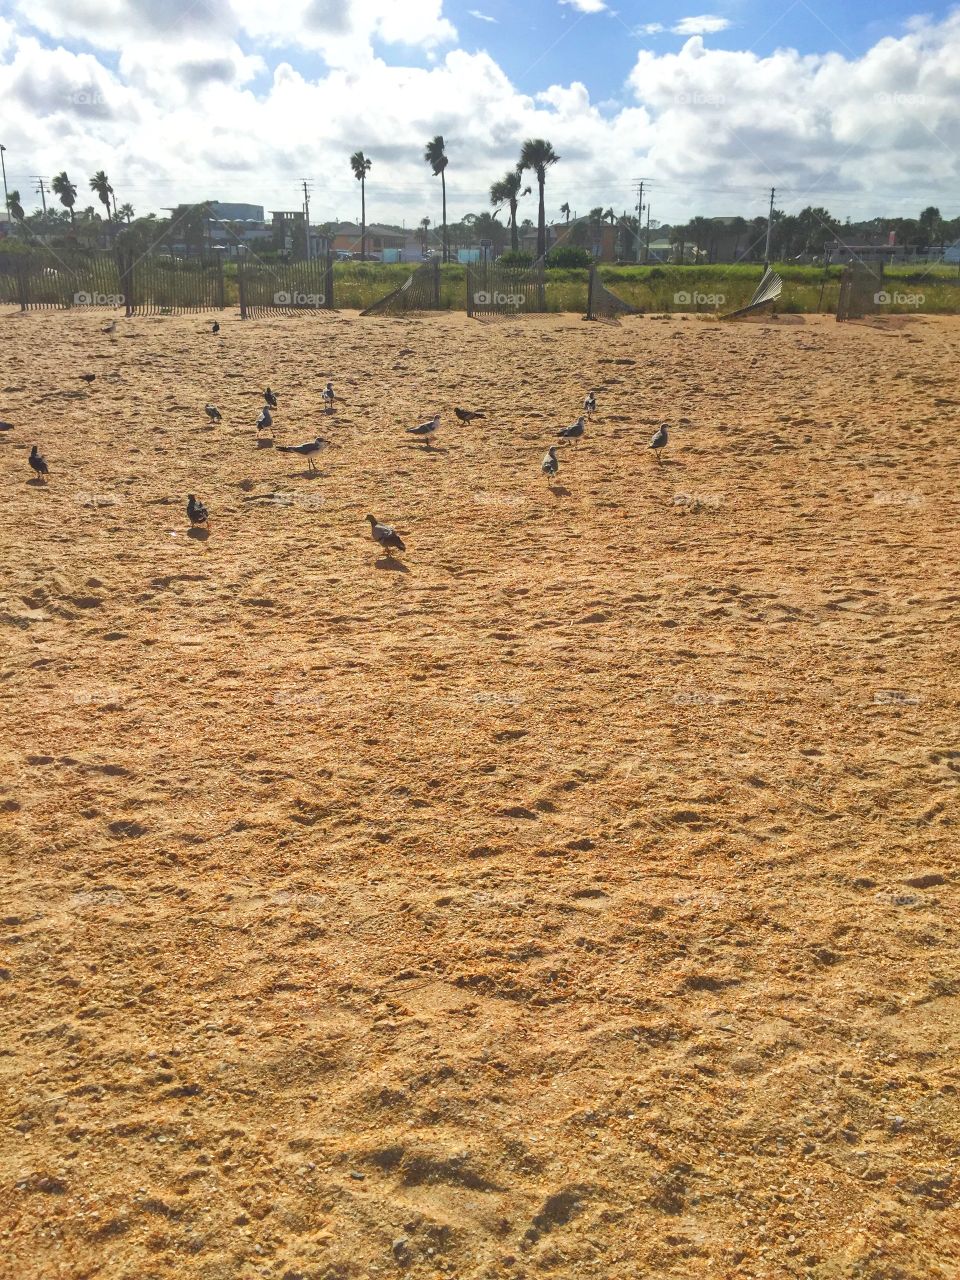 Birds on sand. Some birds on the sand 